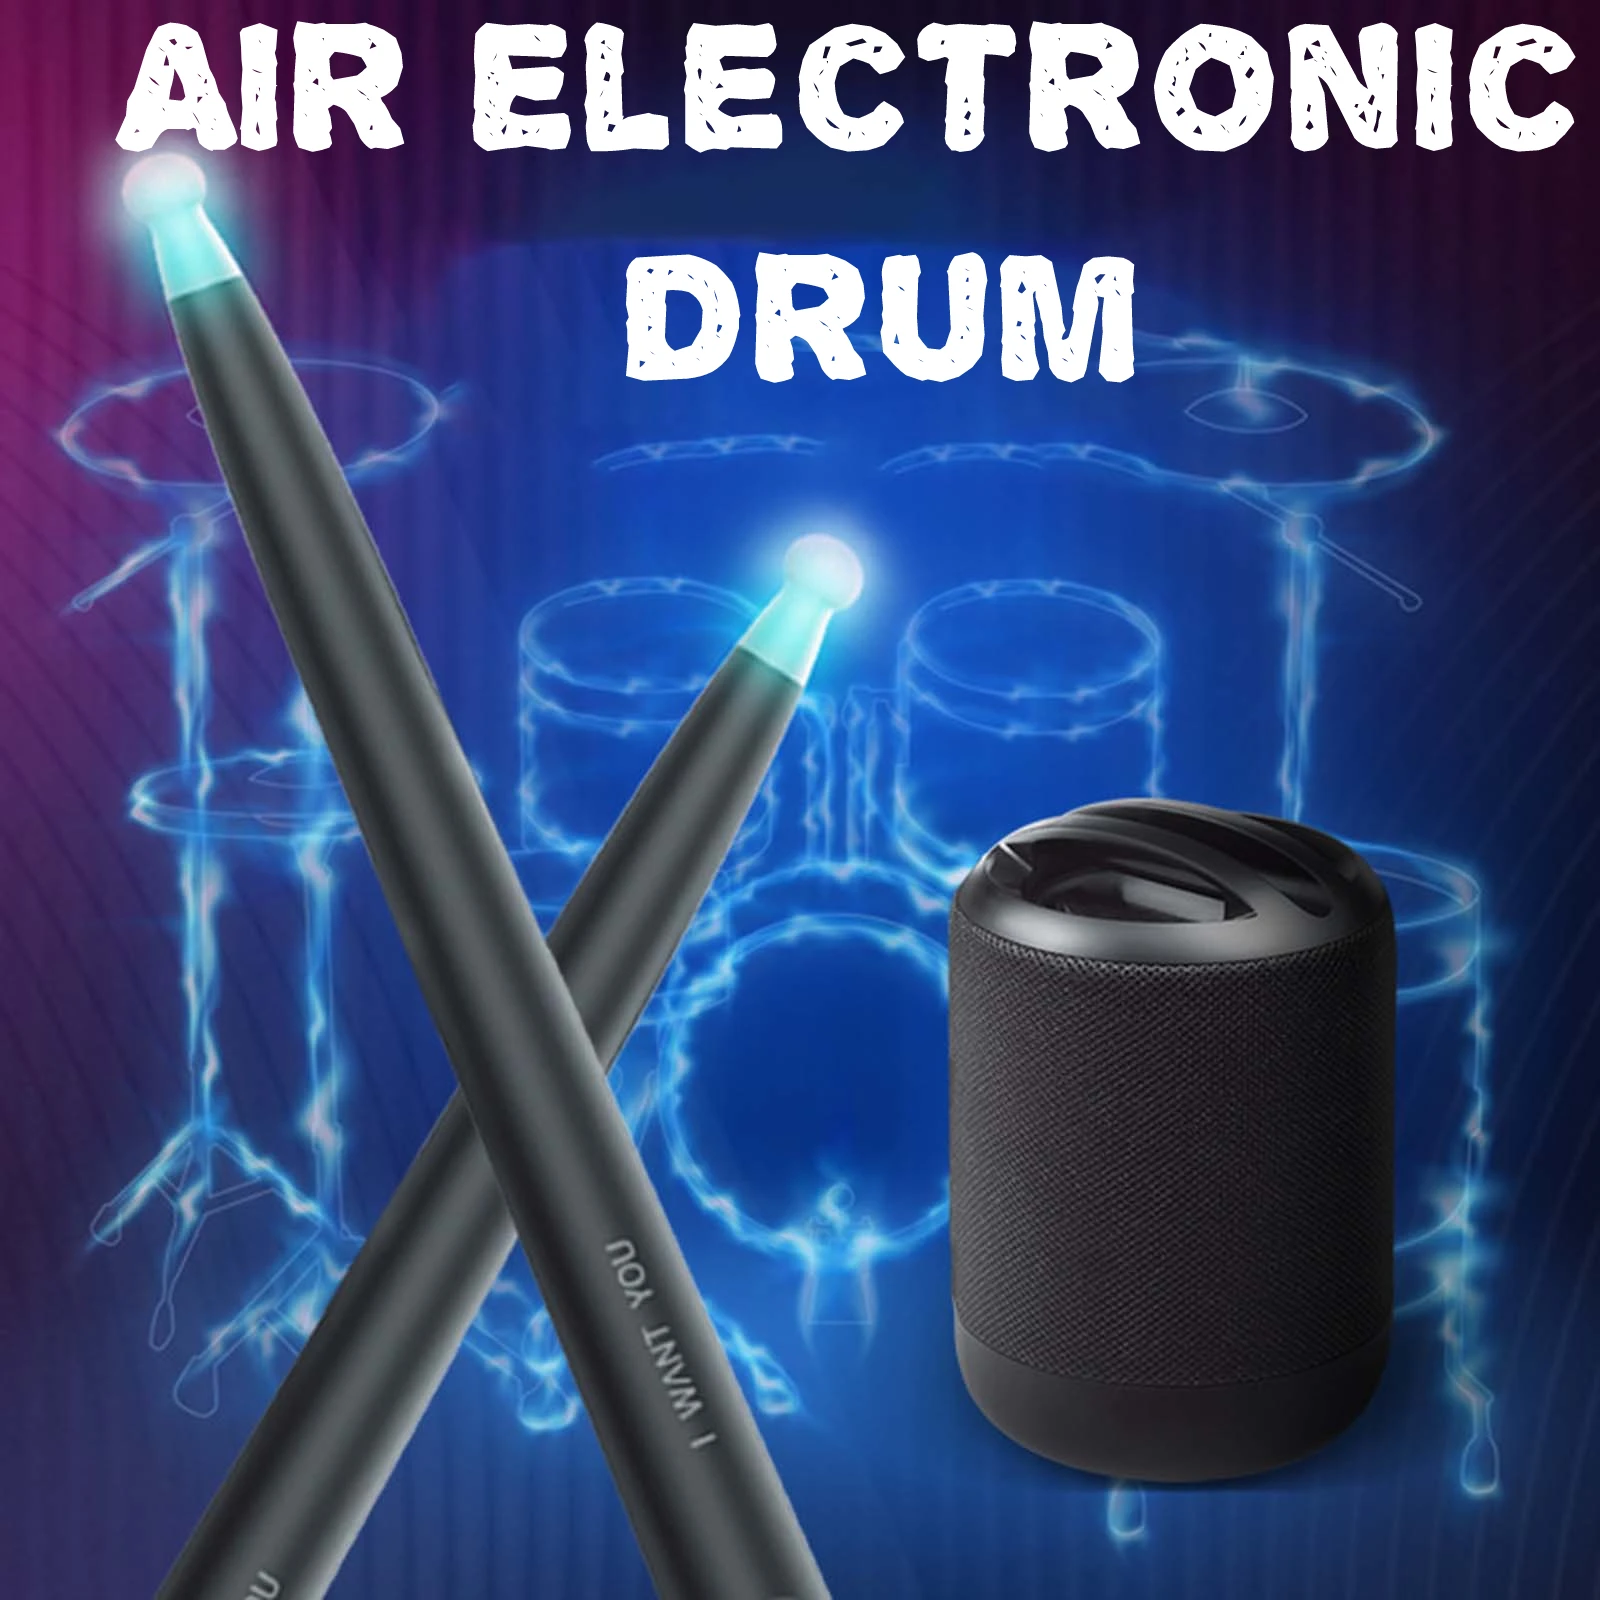 Bateria Eletronica Instrumento Musical Tambor Somatossensorial Ar Eletrônico Virtua Musicais bateria para Iniciantes, Crianças, Adultos